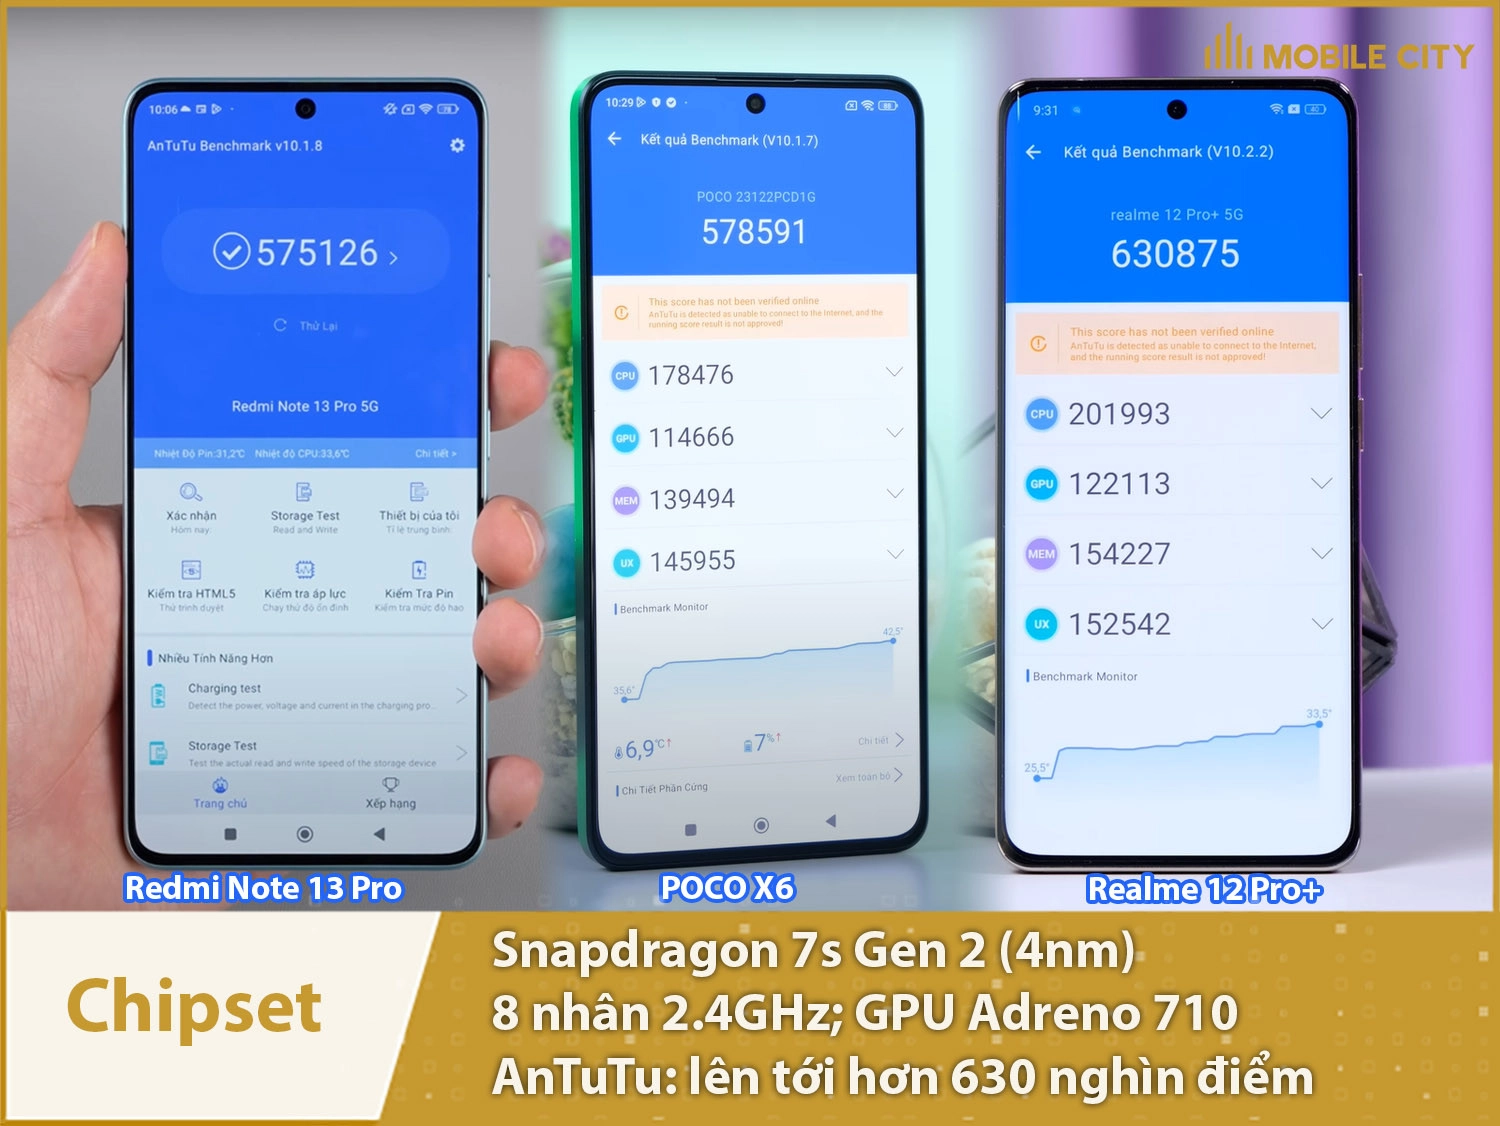 Chip Snapdragon 7s Gen 2 có hiệu năng mạnh mẽ với hơn 630 nghìn điểm AnTuTu